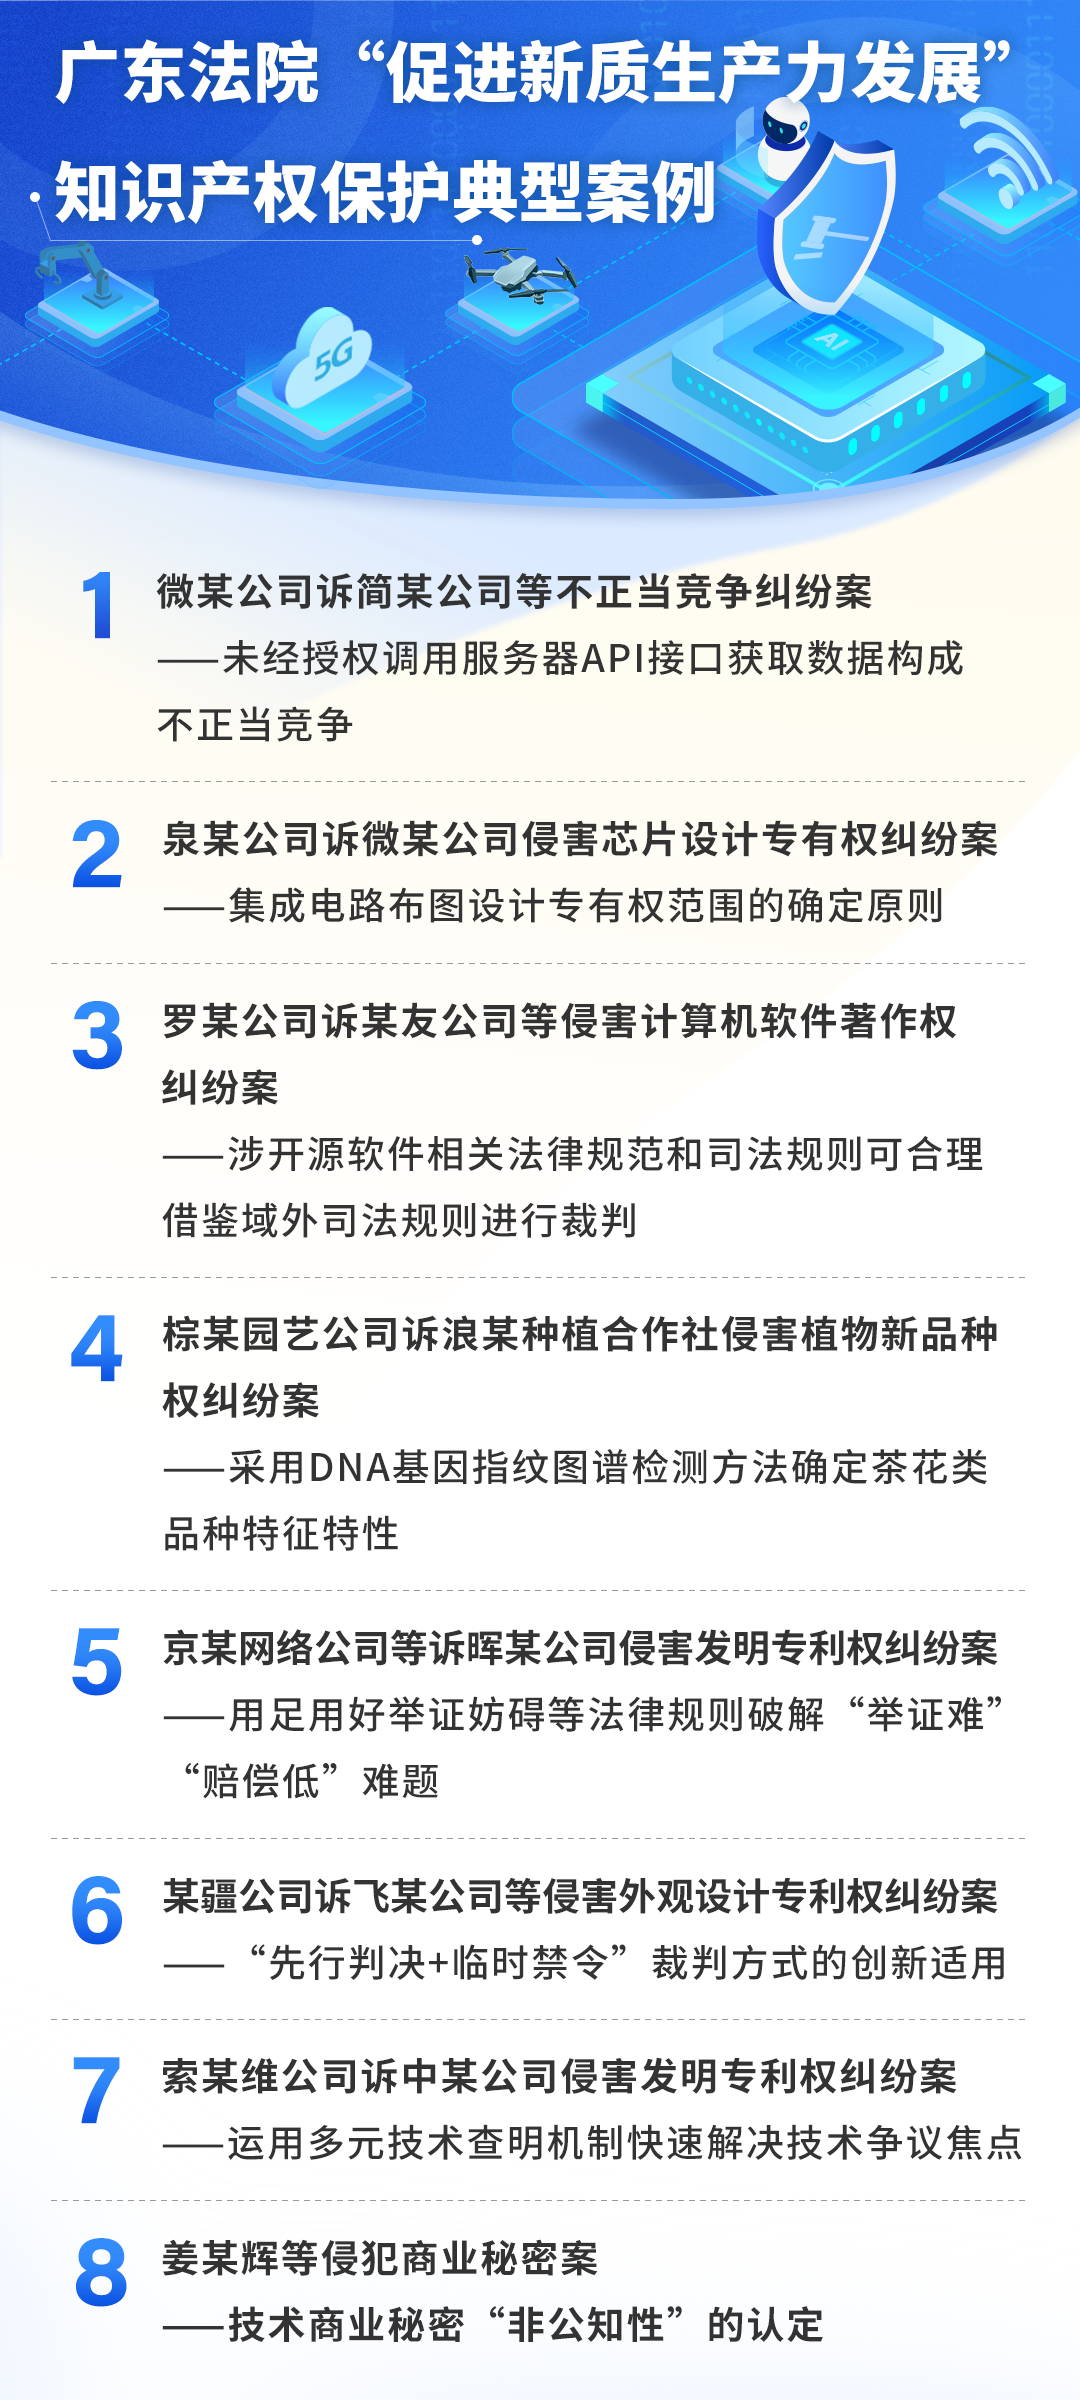 广东高院发布“促进新质生产力发展”知识产权保护典型案例.png